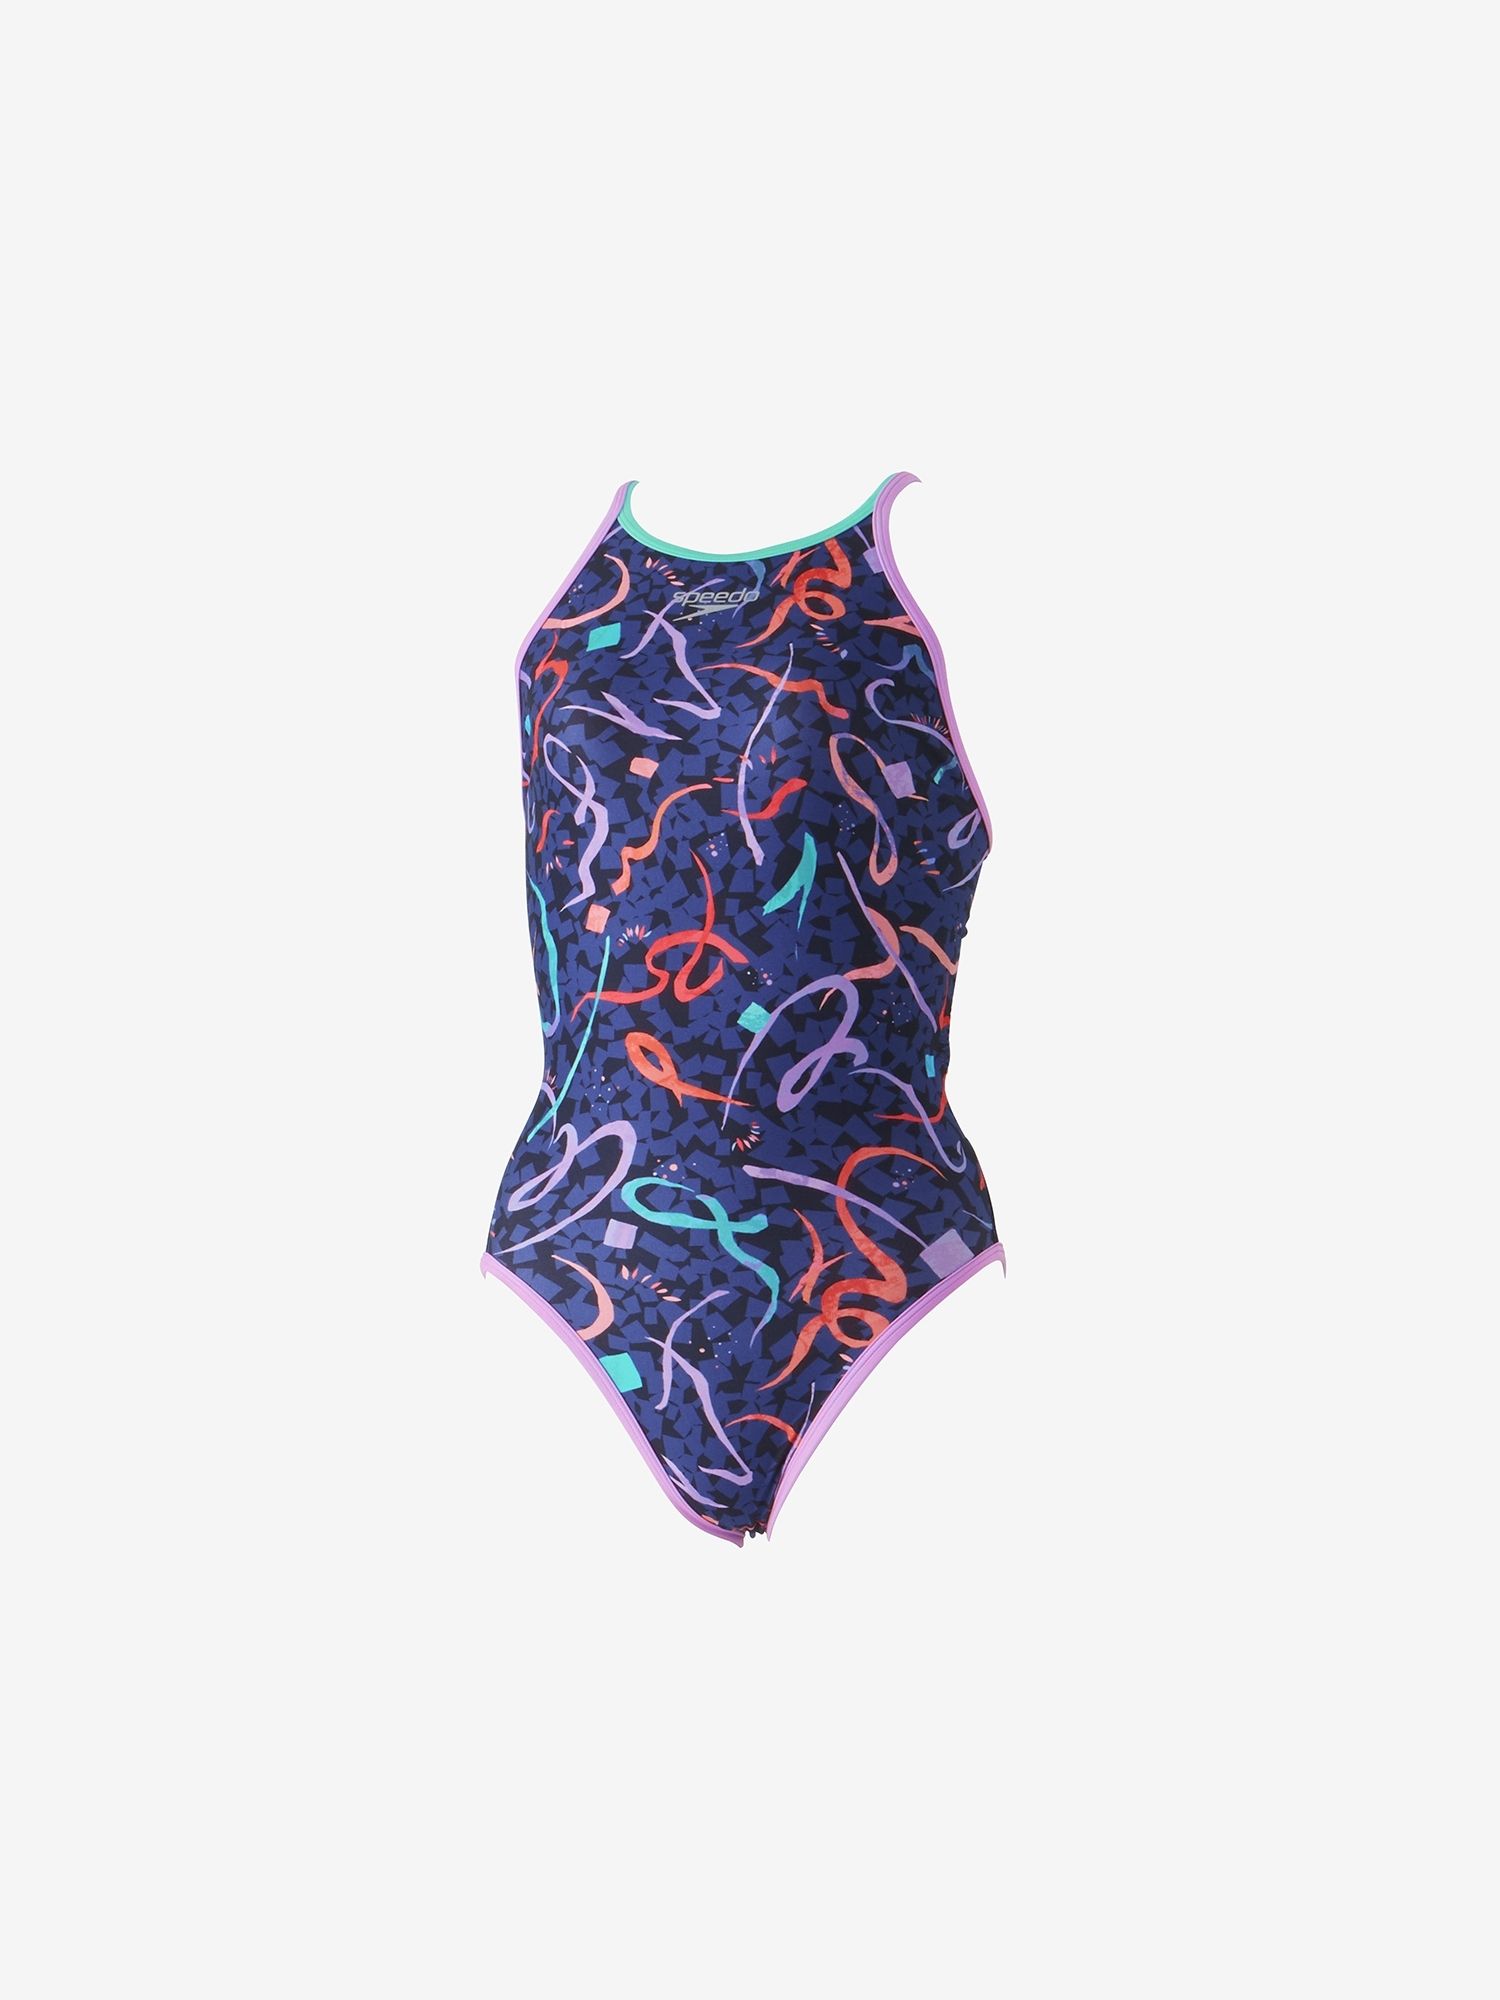 speedo 紫 sサイズ 競泳水着 練習用 - スポーツ用